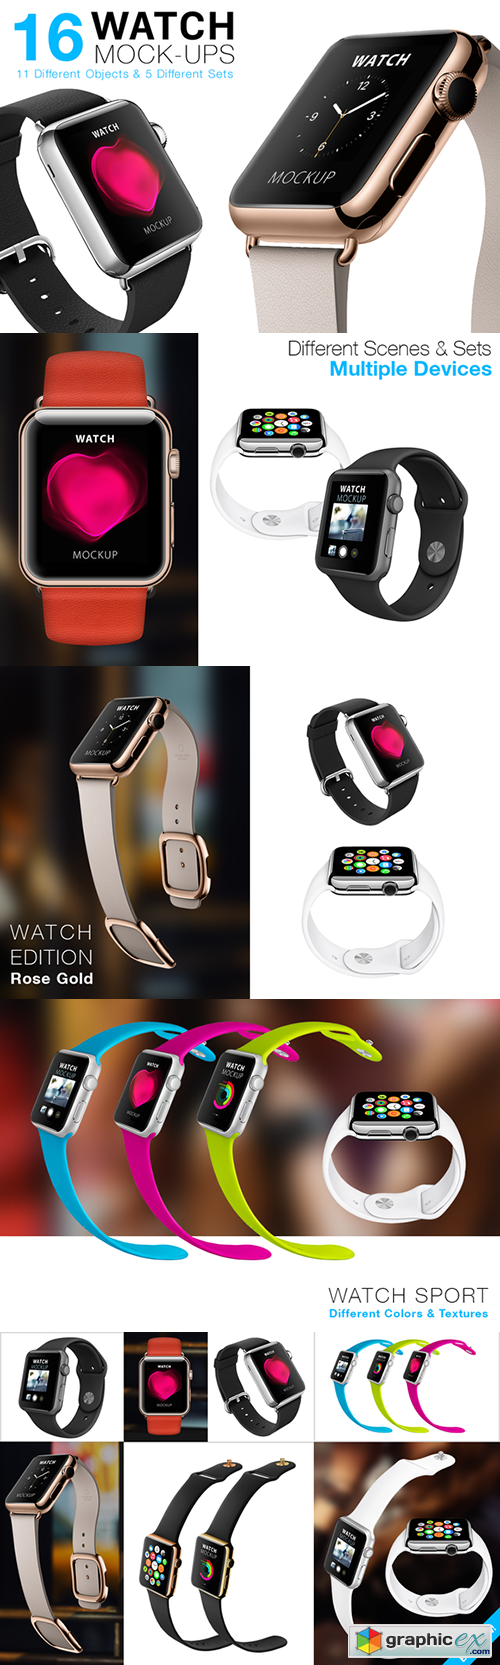 Apple Watch Mock-ups